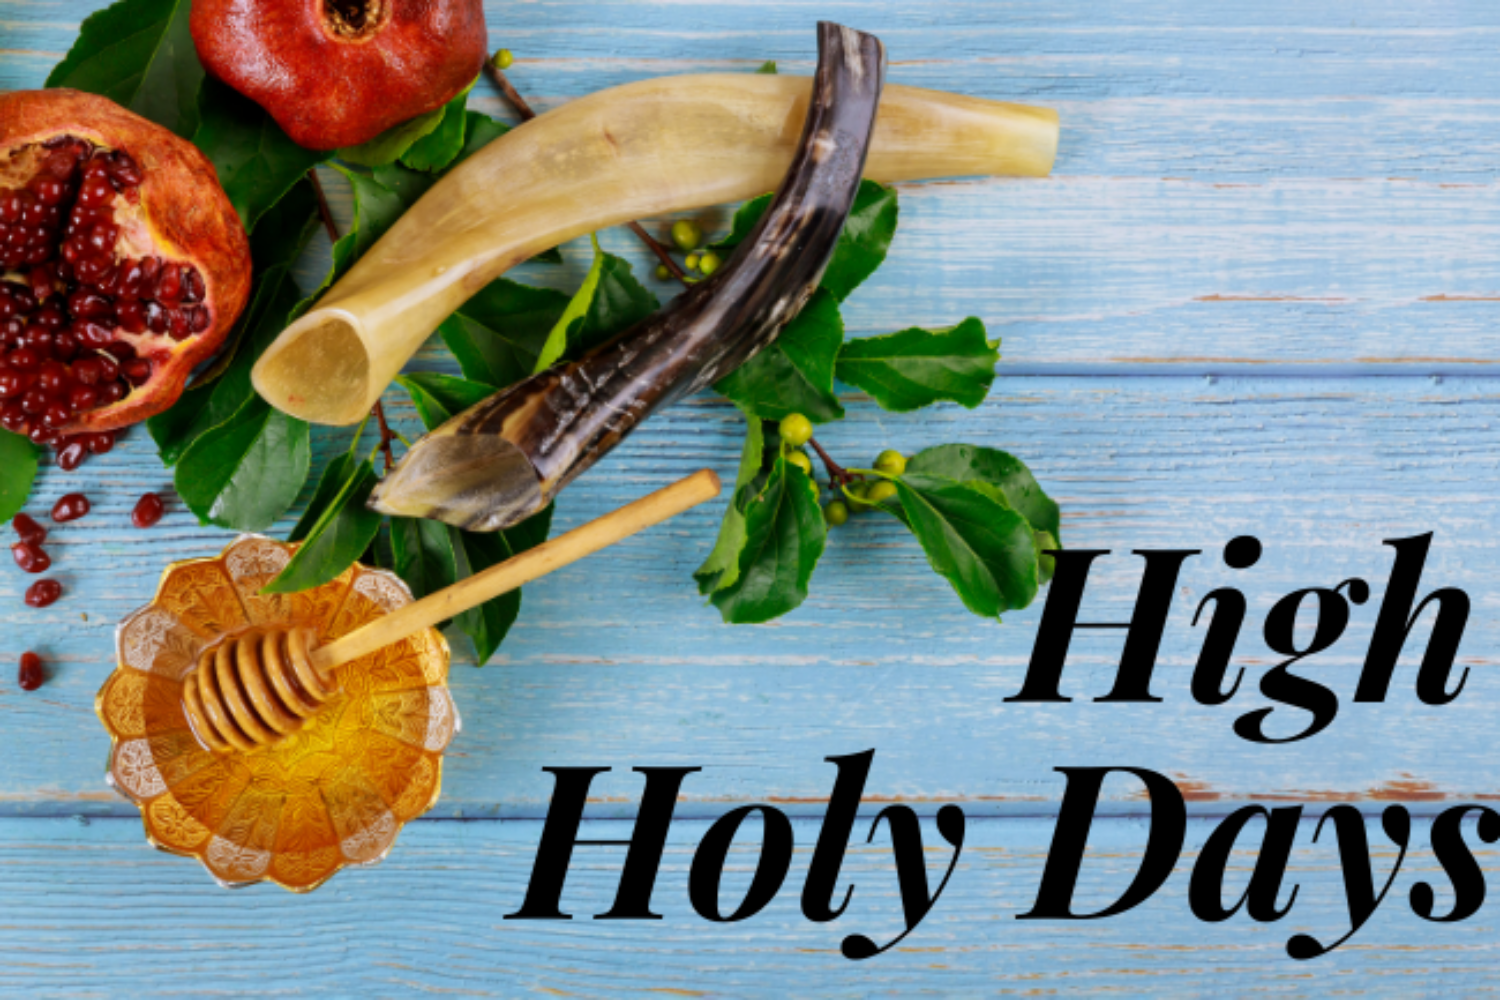 High Holy Days